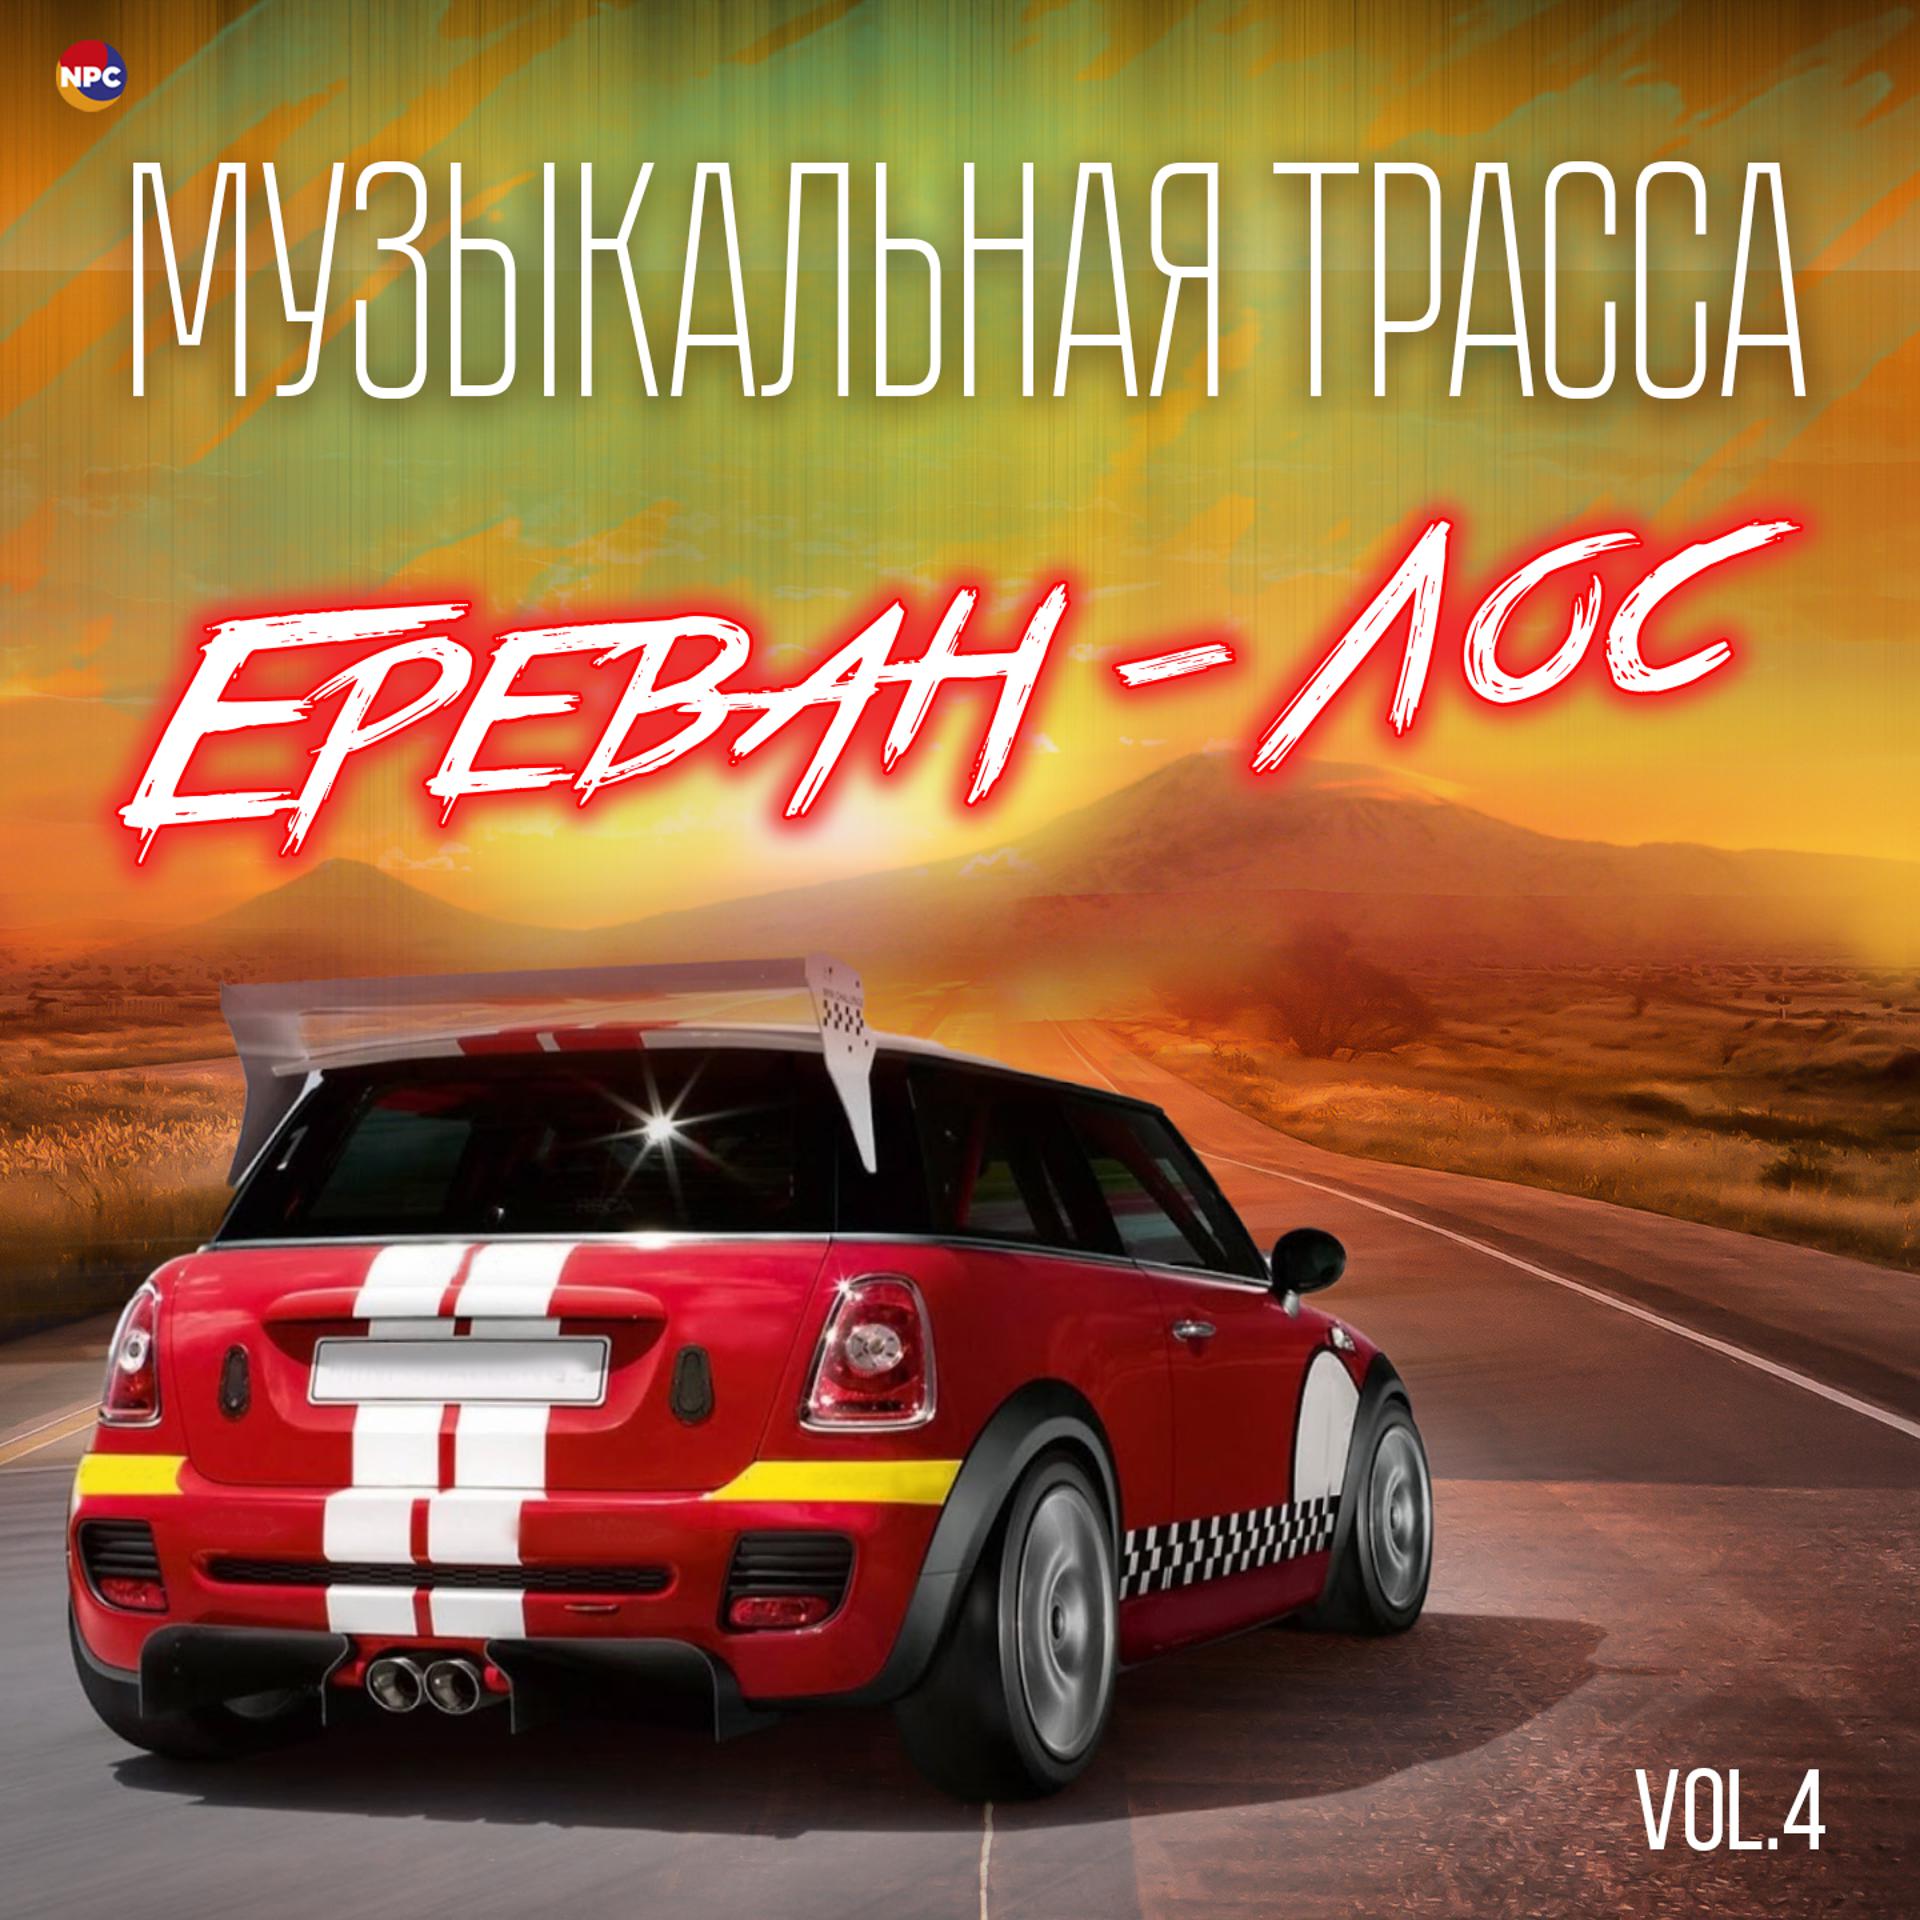 Постер альбома Музыкальная трасса Ереван - Лос, Vol. 4